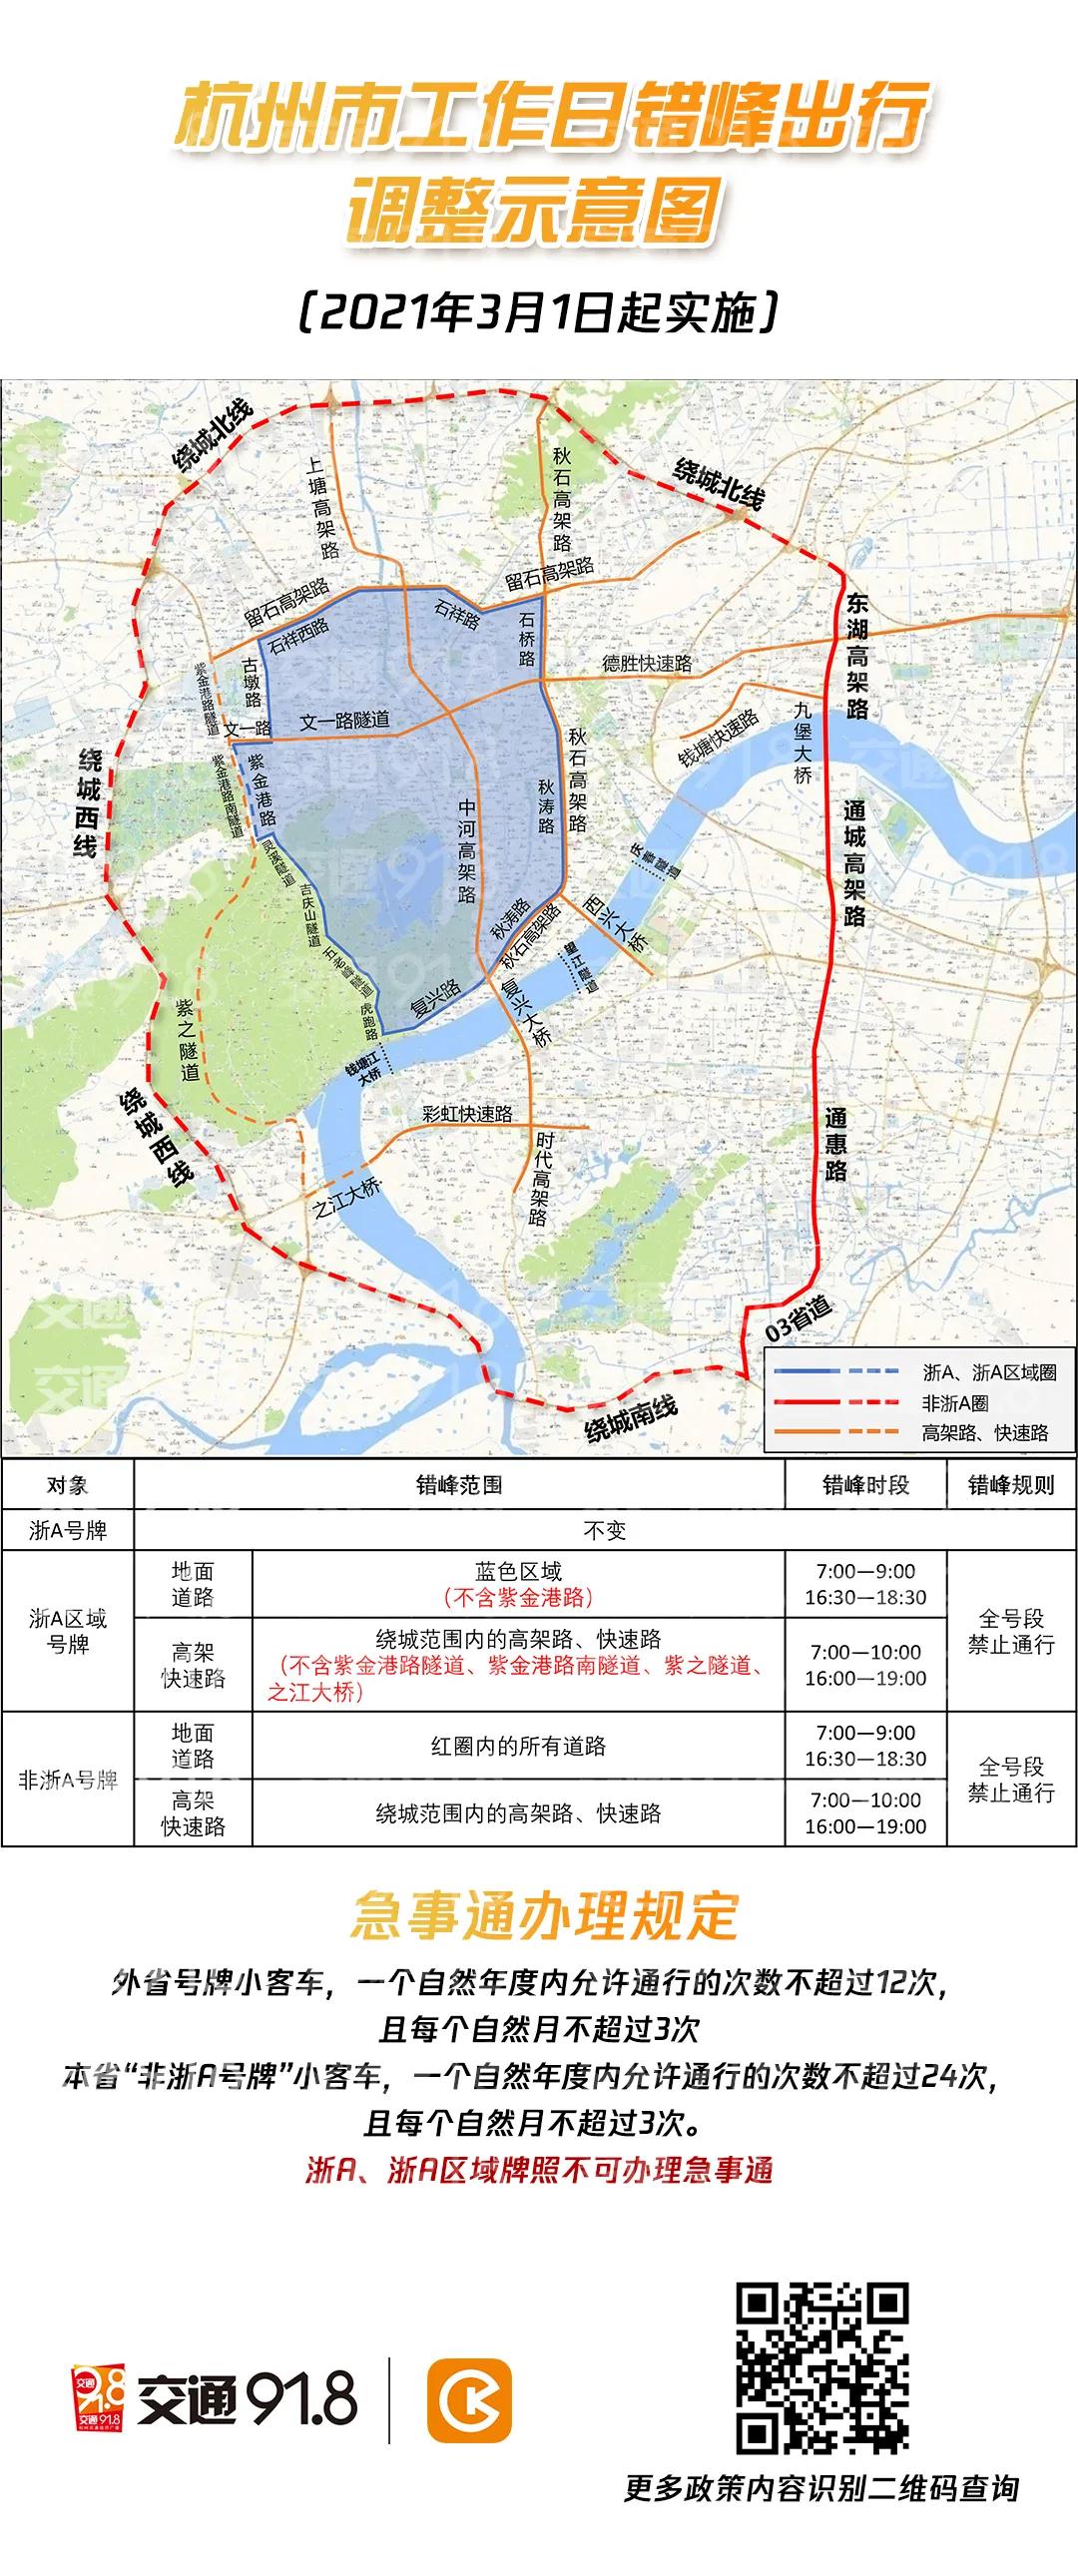 杭州交通918讯 2021年3月1日起杭州市小客车"区域指标"和"浙a区域